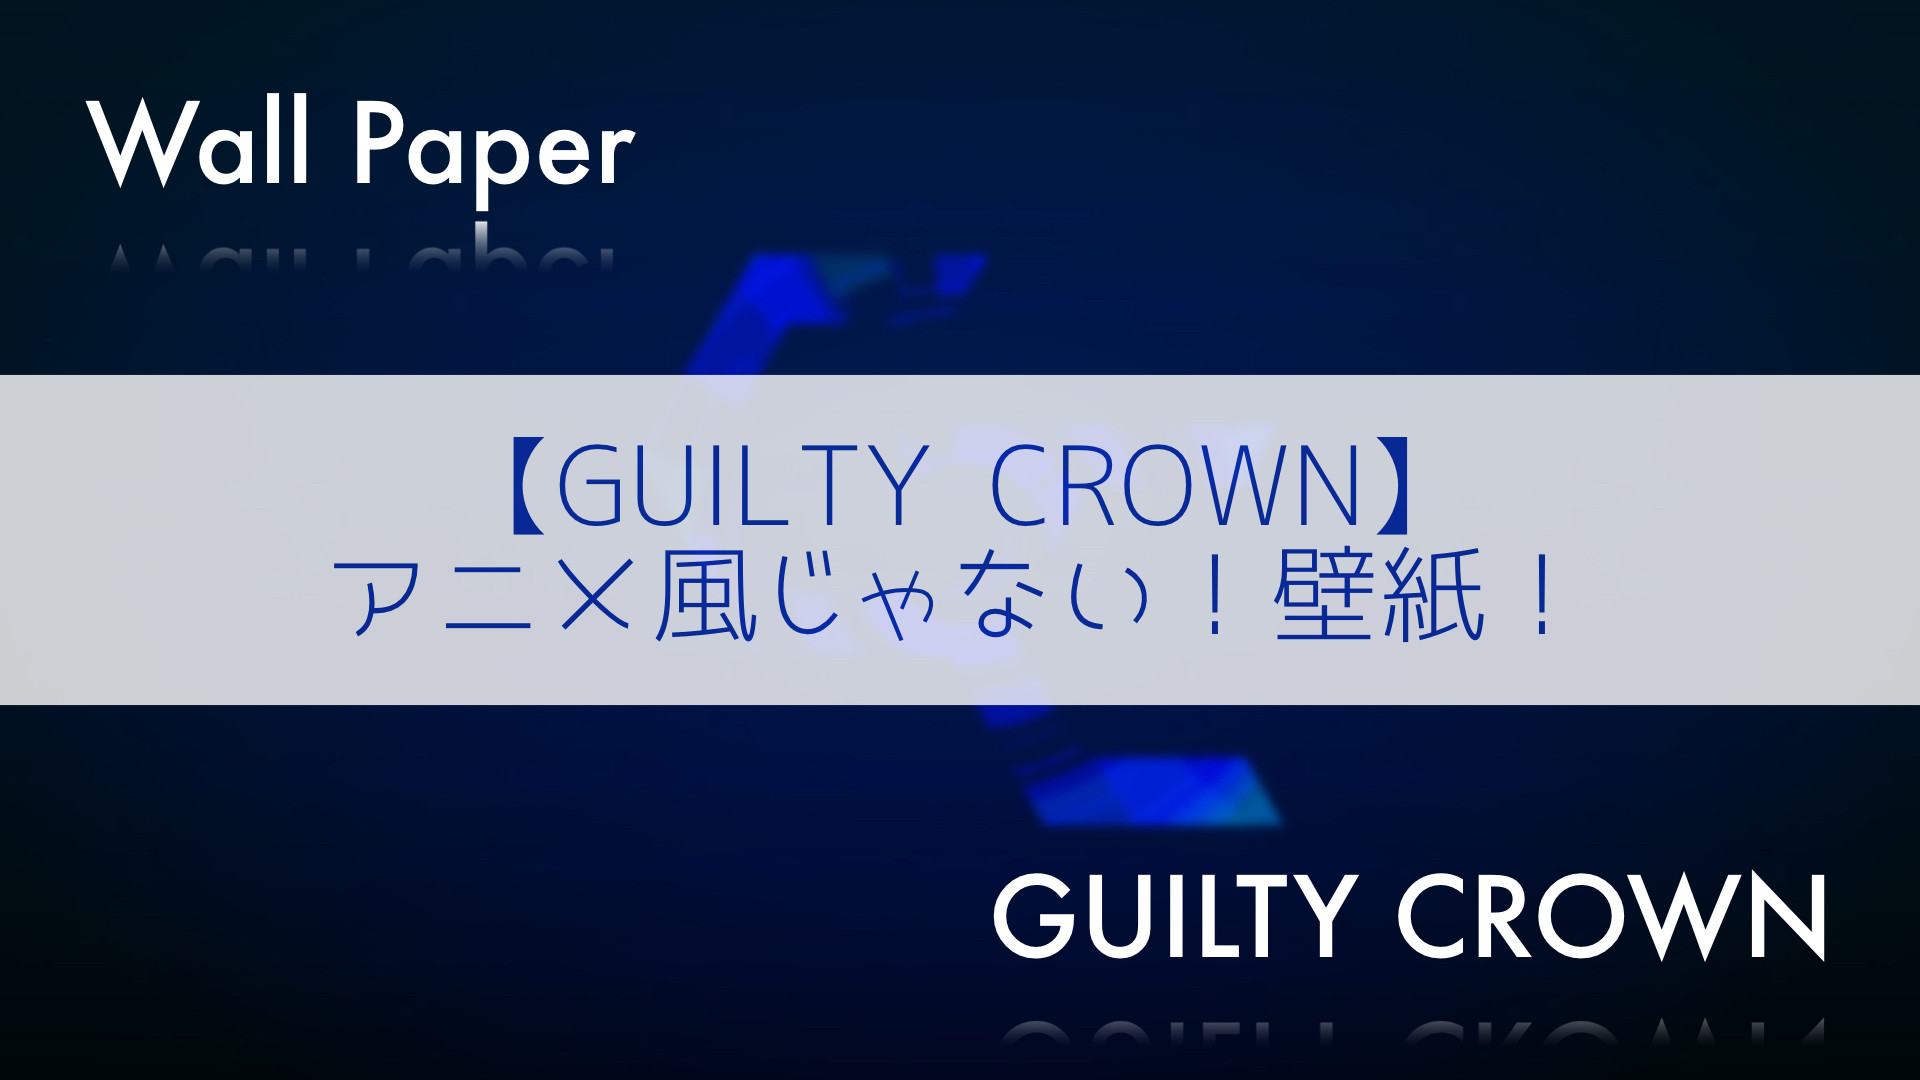 Guilty Crown アニメ風じゃない 壁紙 Mac Iosの小技